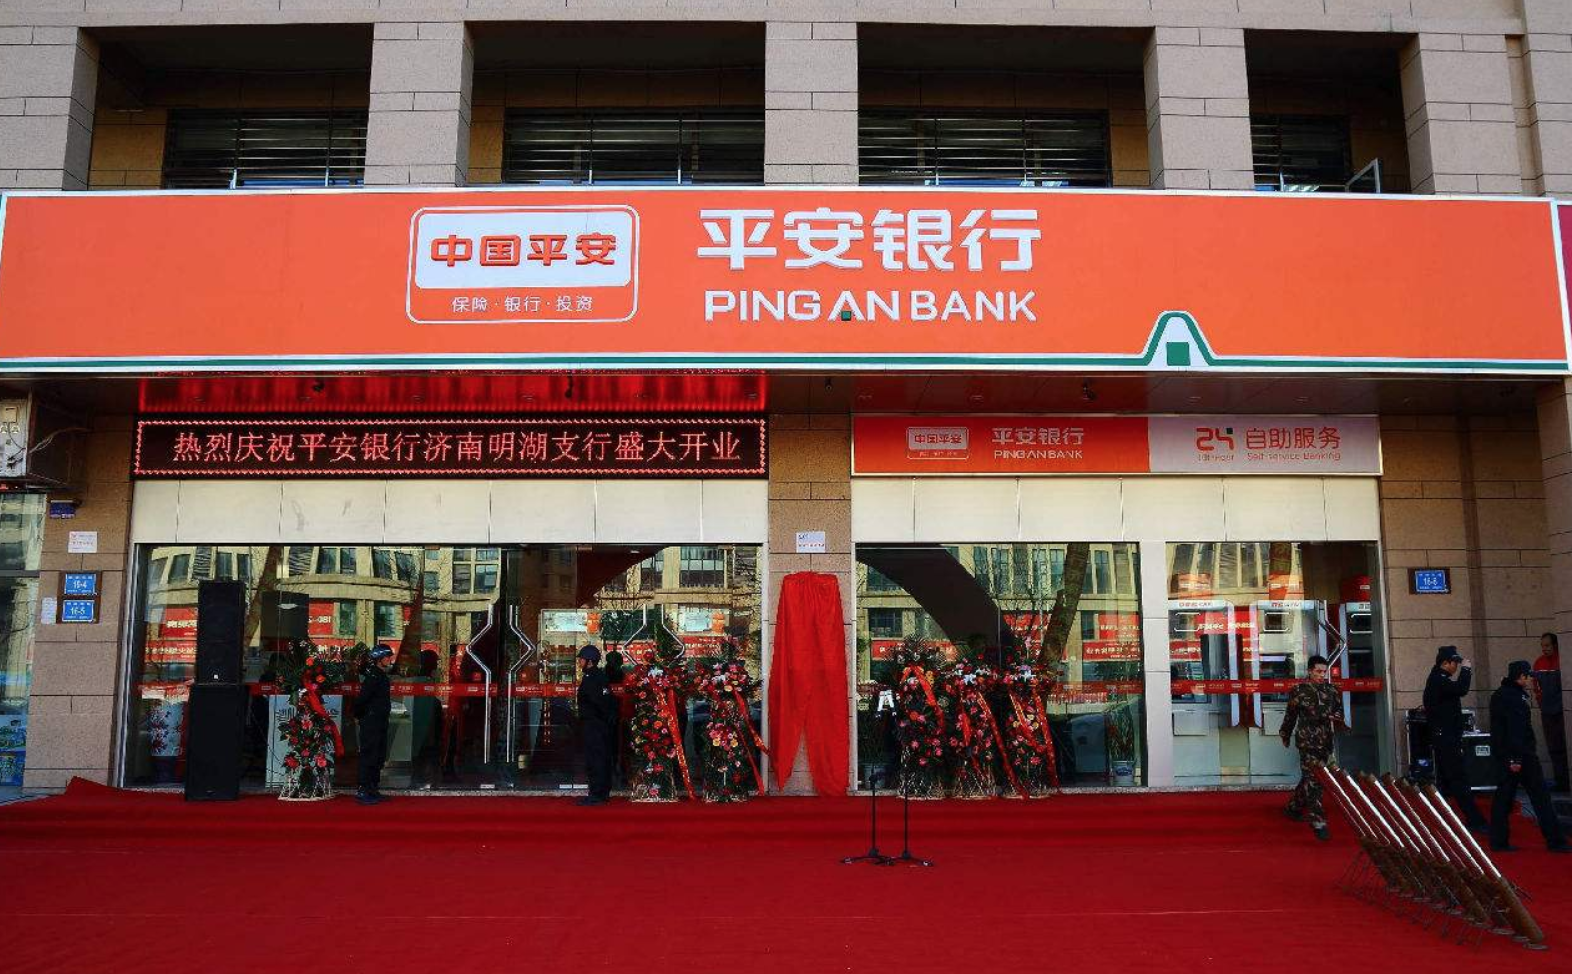 Pingan китайская компания. Страховые компании в Китае. “Ping an” компания. Ping an bank